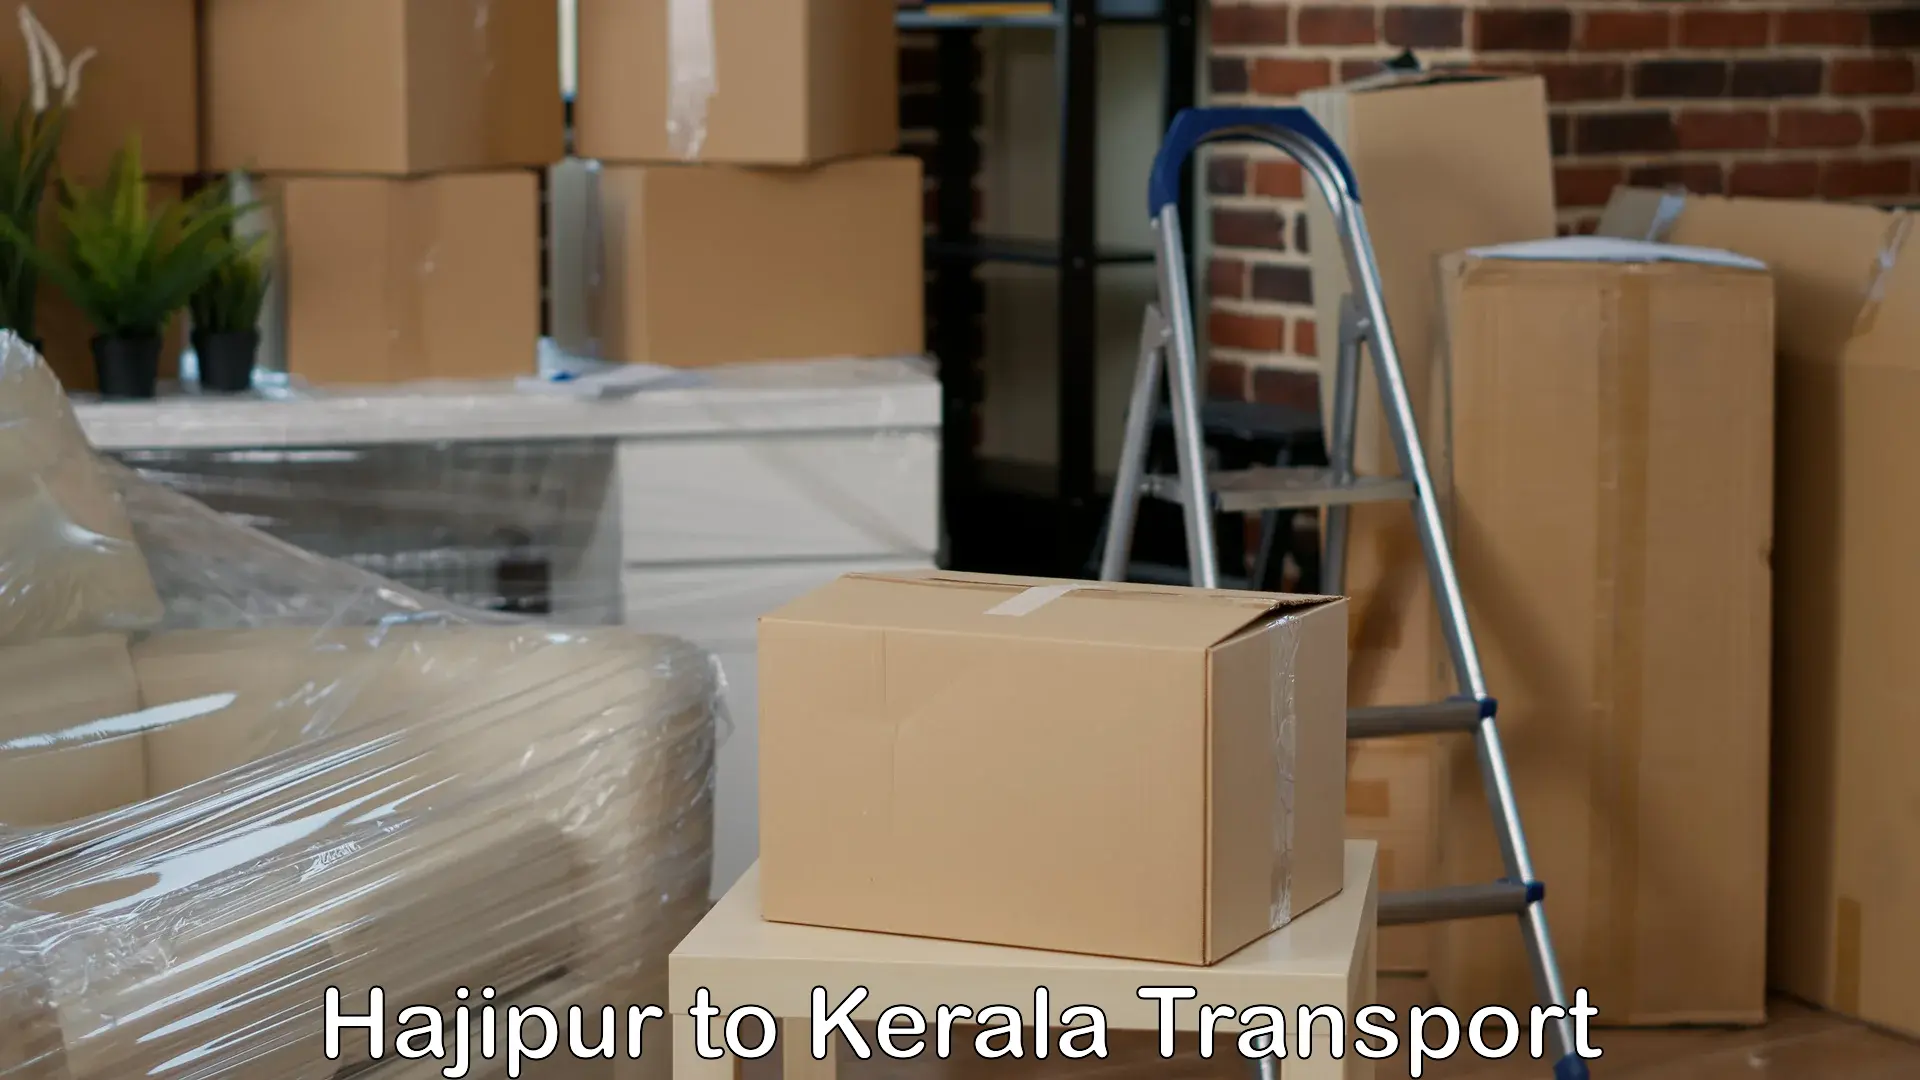 Online transport service Hajipur to Karimba